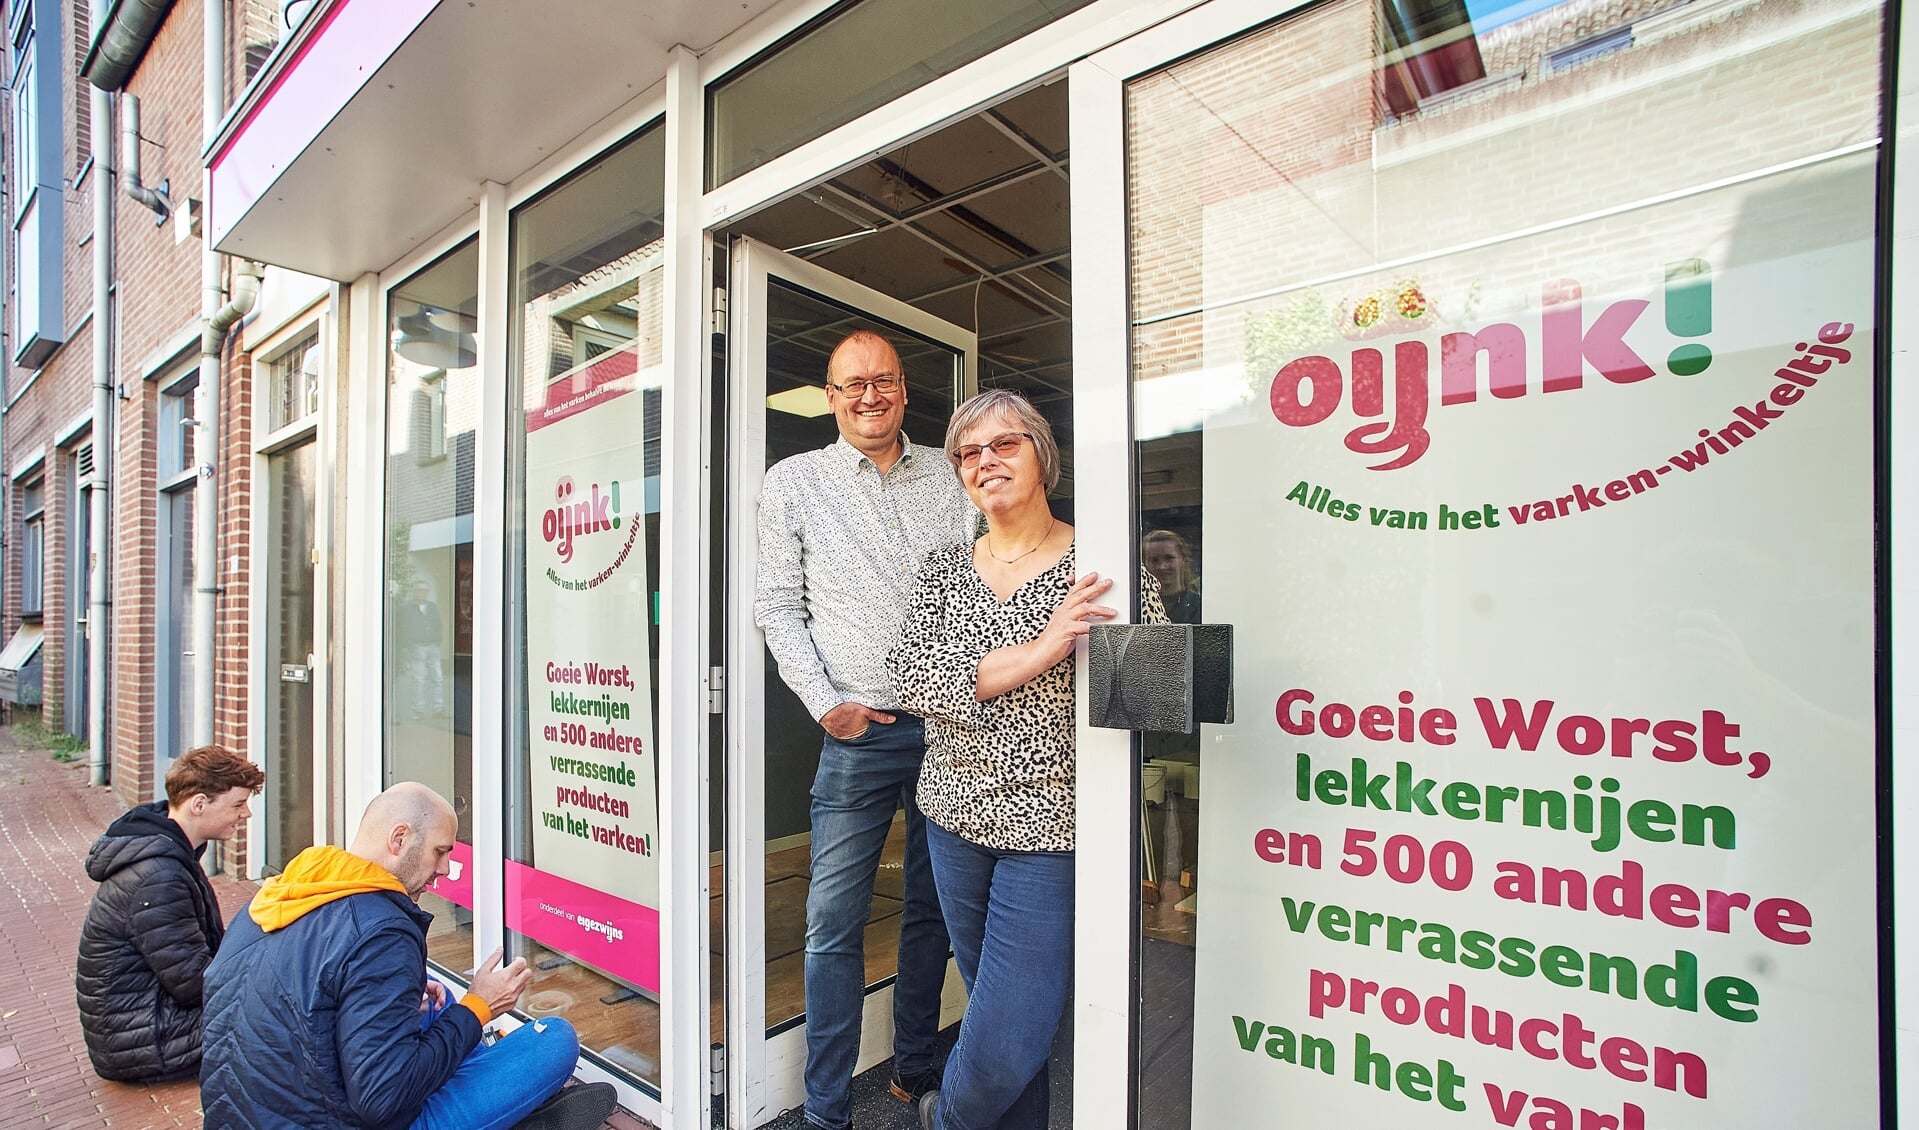 Varkenshouders Marcel- en Miriam Berkvens openden op 1 oktober 2020 hun winkel in de Kalverstraat.